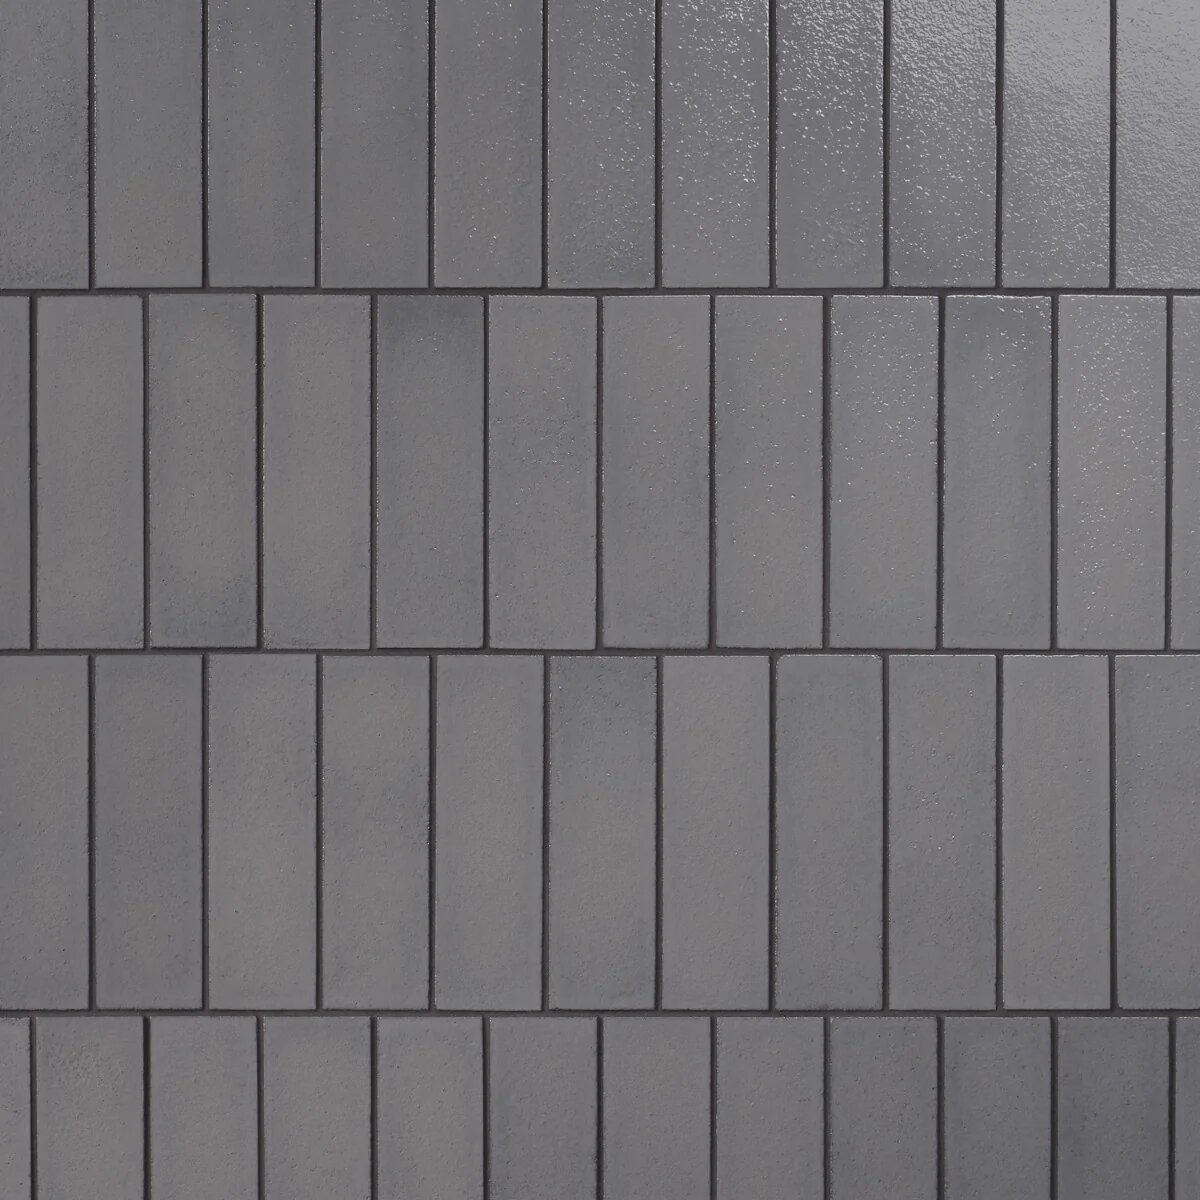 Charcoal gray tiles